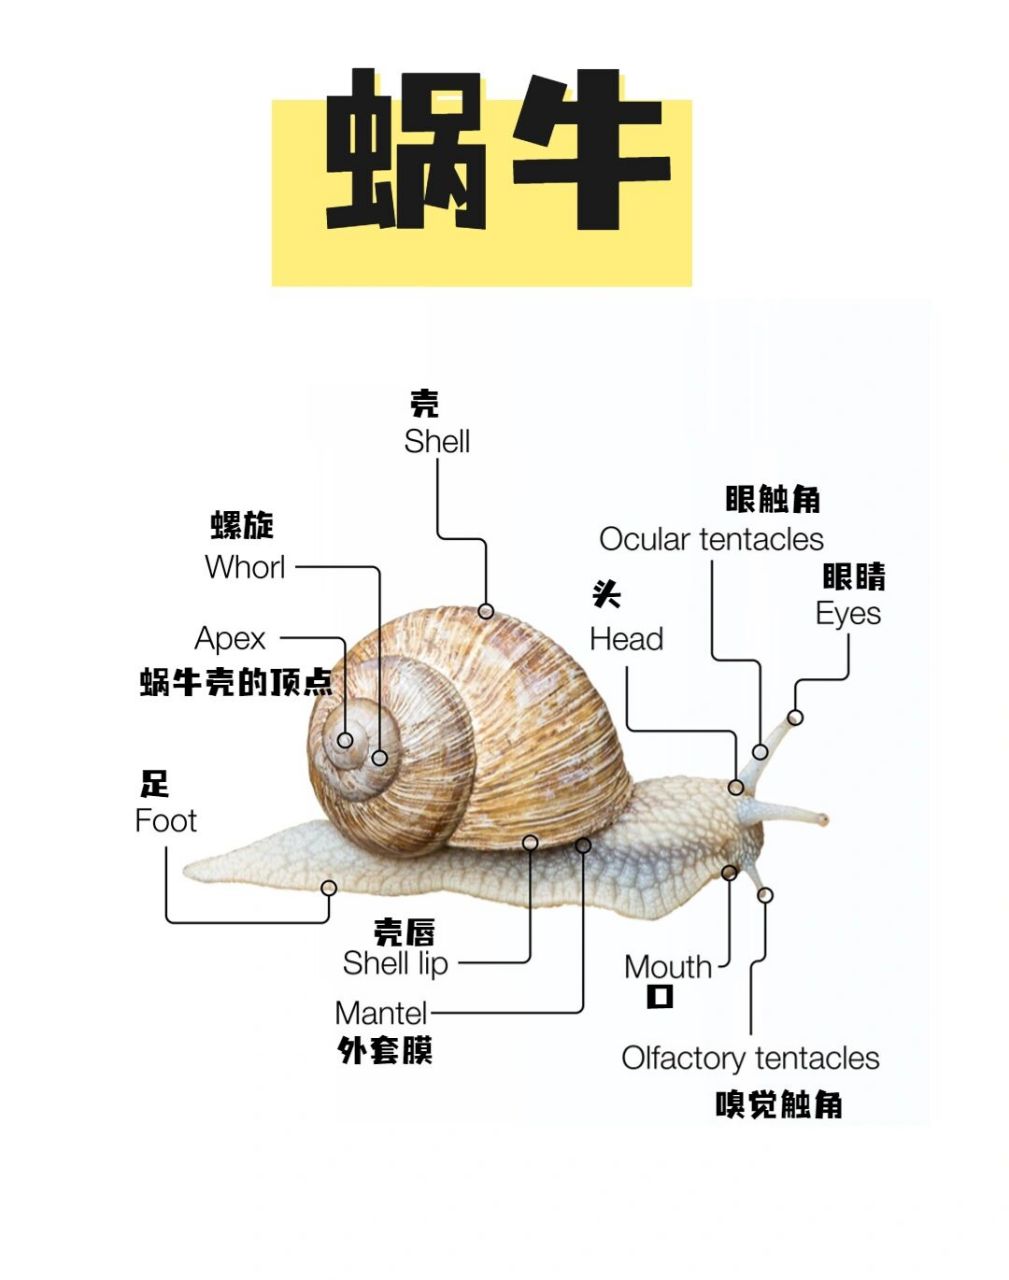 蜗牛身体各部分名称图图片